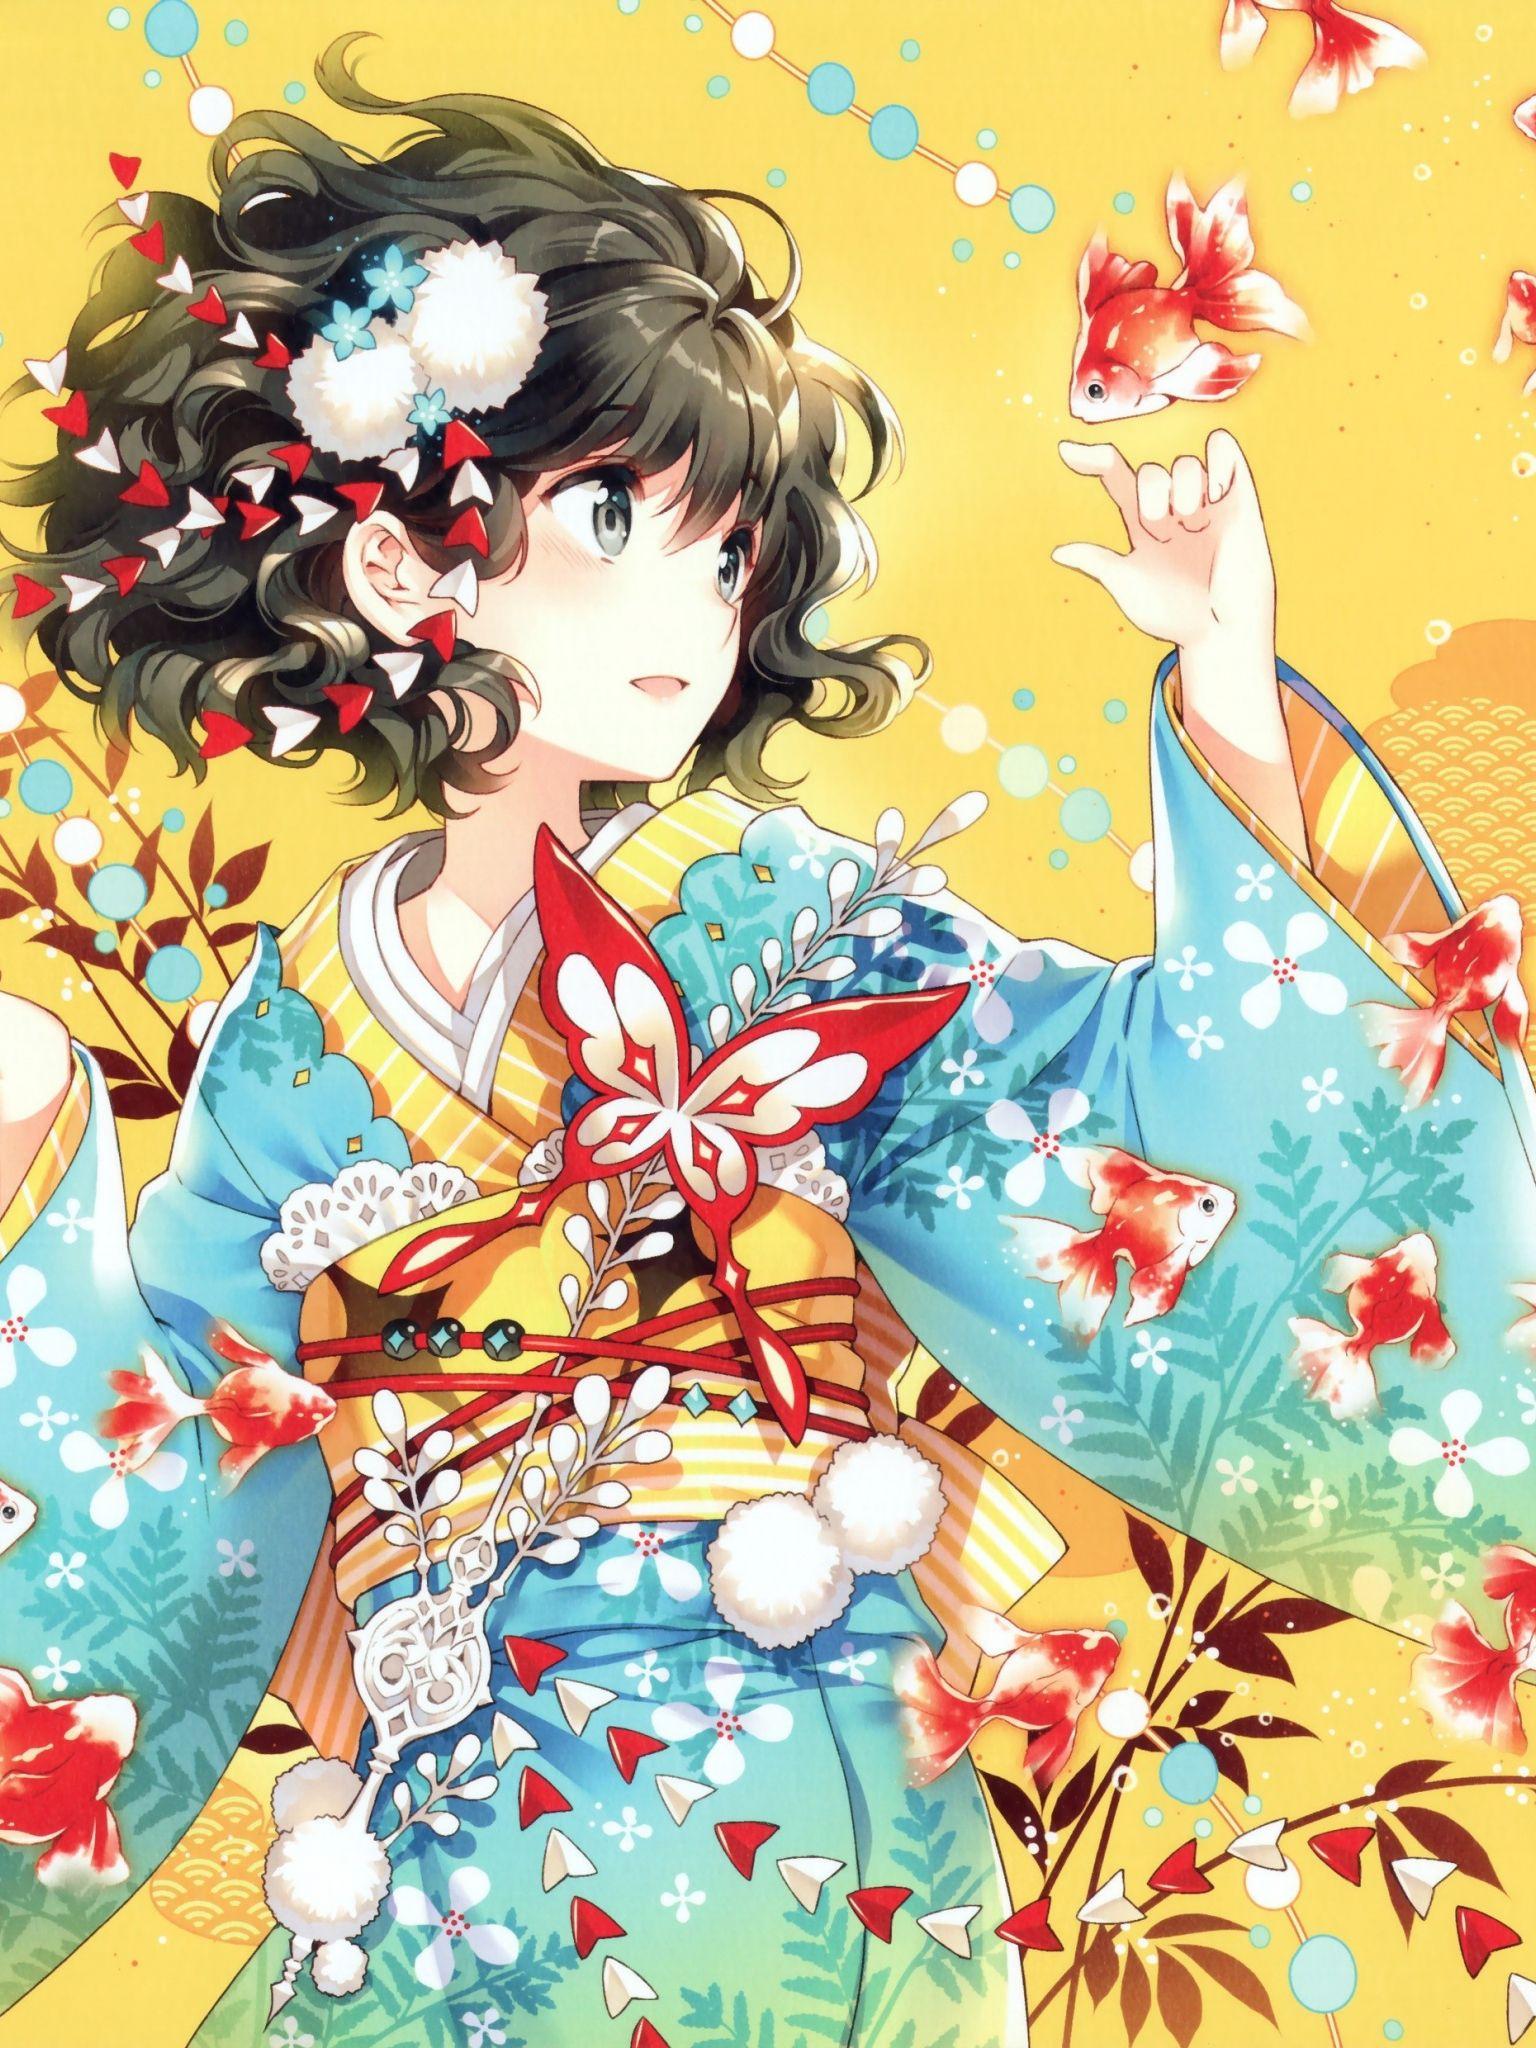 Anime Kimono Girl Wallpapers - Top Free Anime Kimono Girl Backgrounds ...